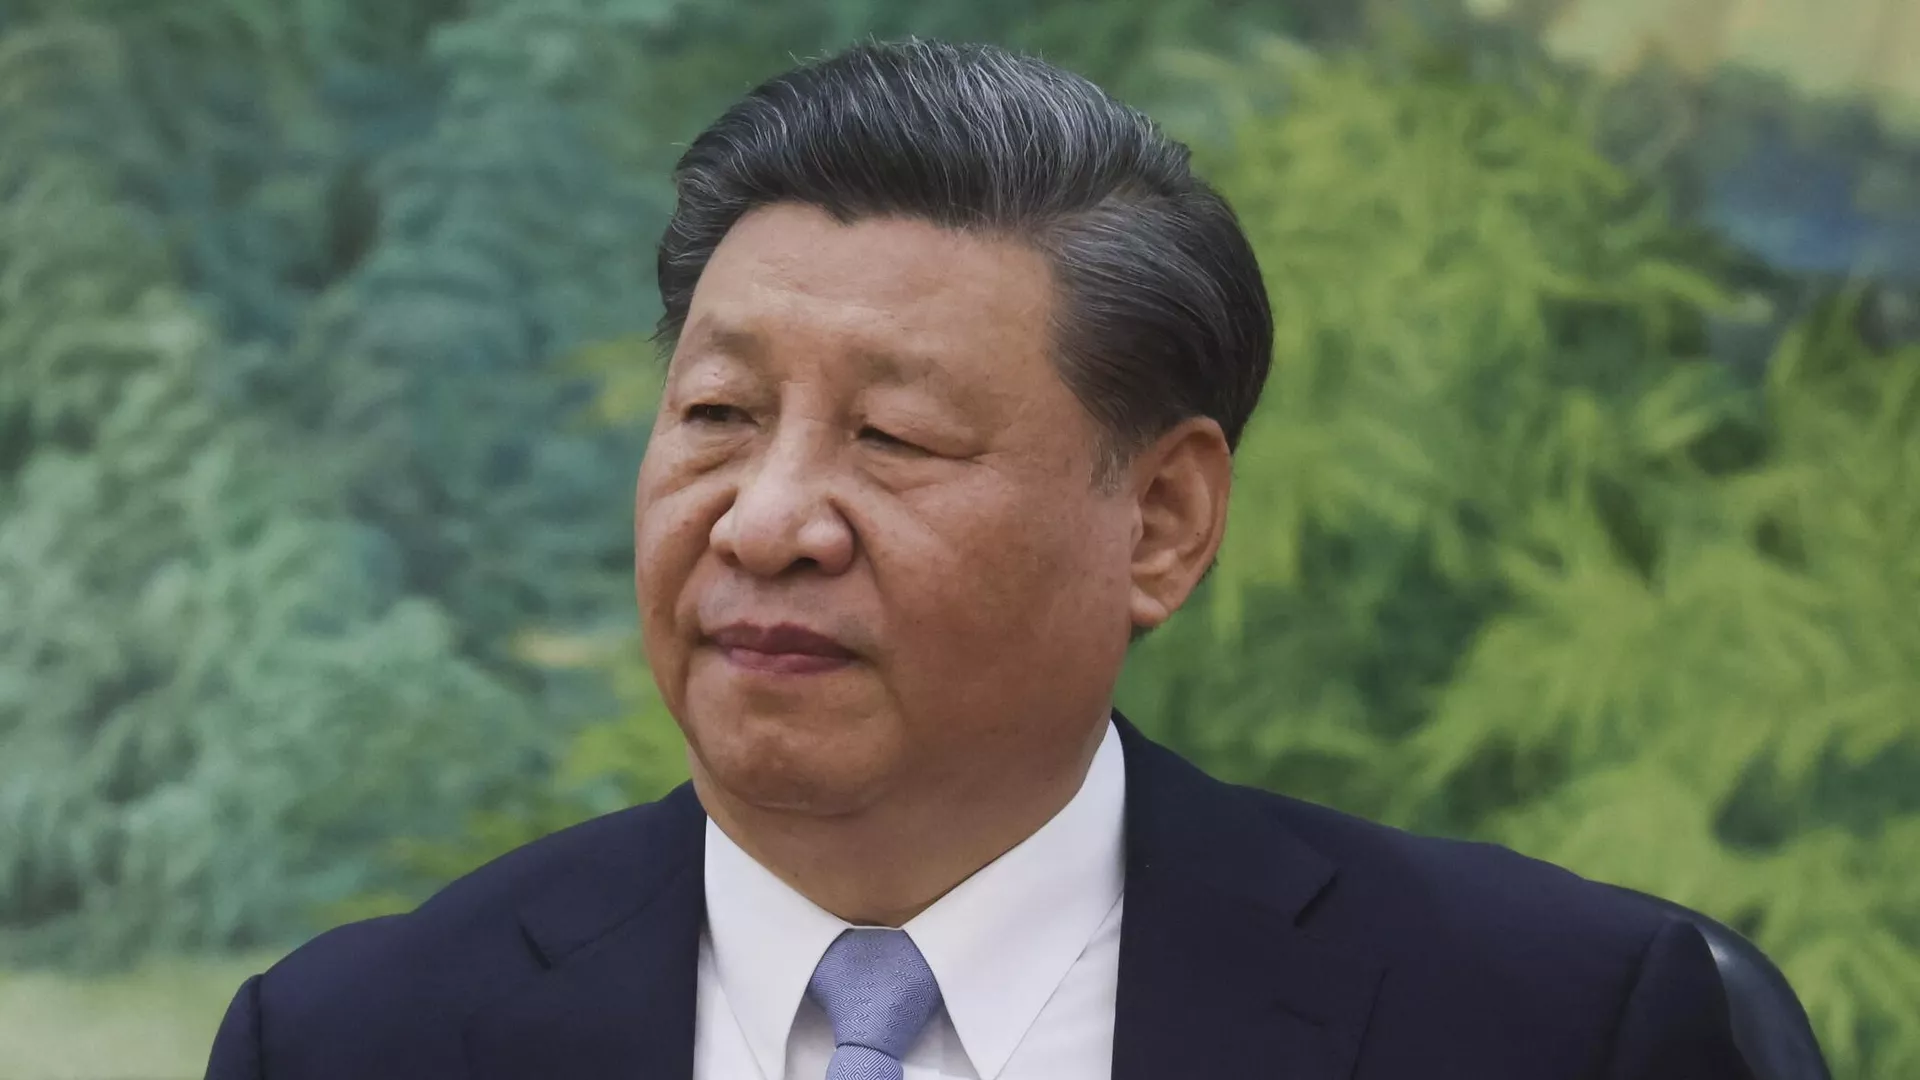 الرئيس الصيني يصل إلى جنوب أفريقيا للمشاركة في قمة “بريكس”